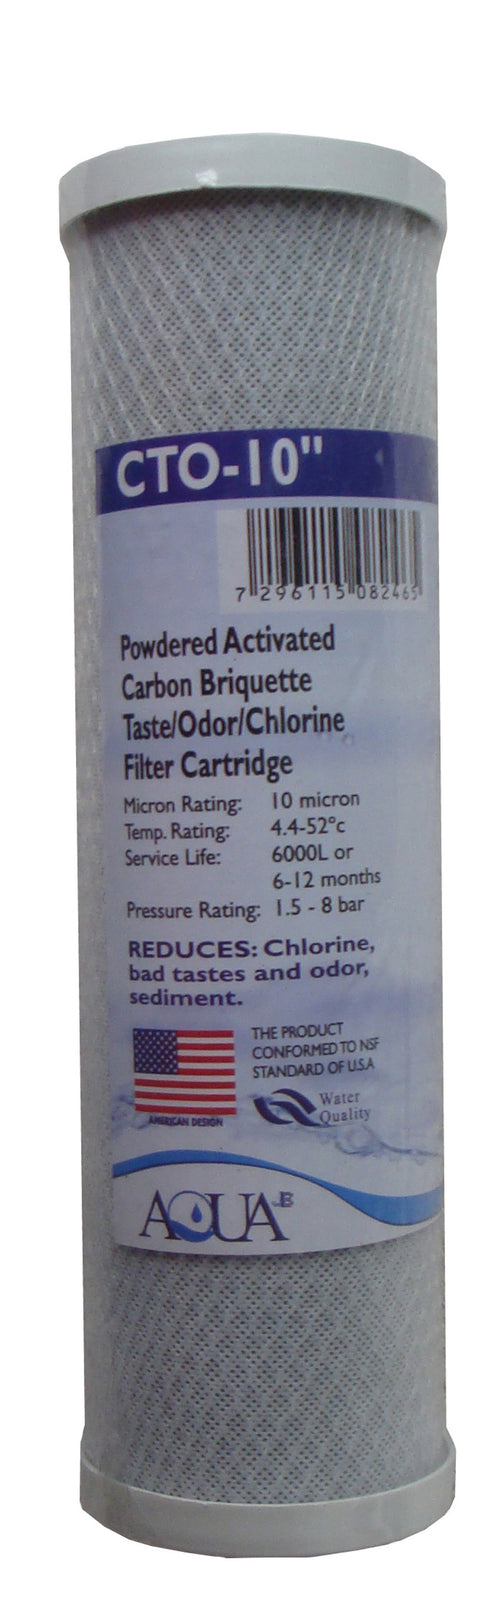 Filtro de Carbón CTO-10 absorbe el color, cloro y contaminantes orgánicos